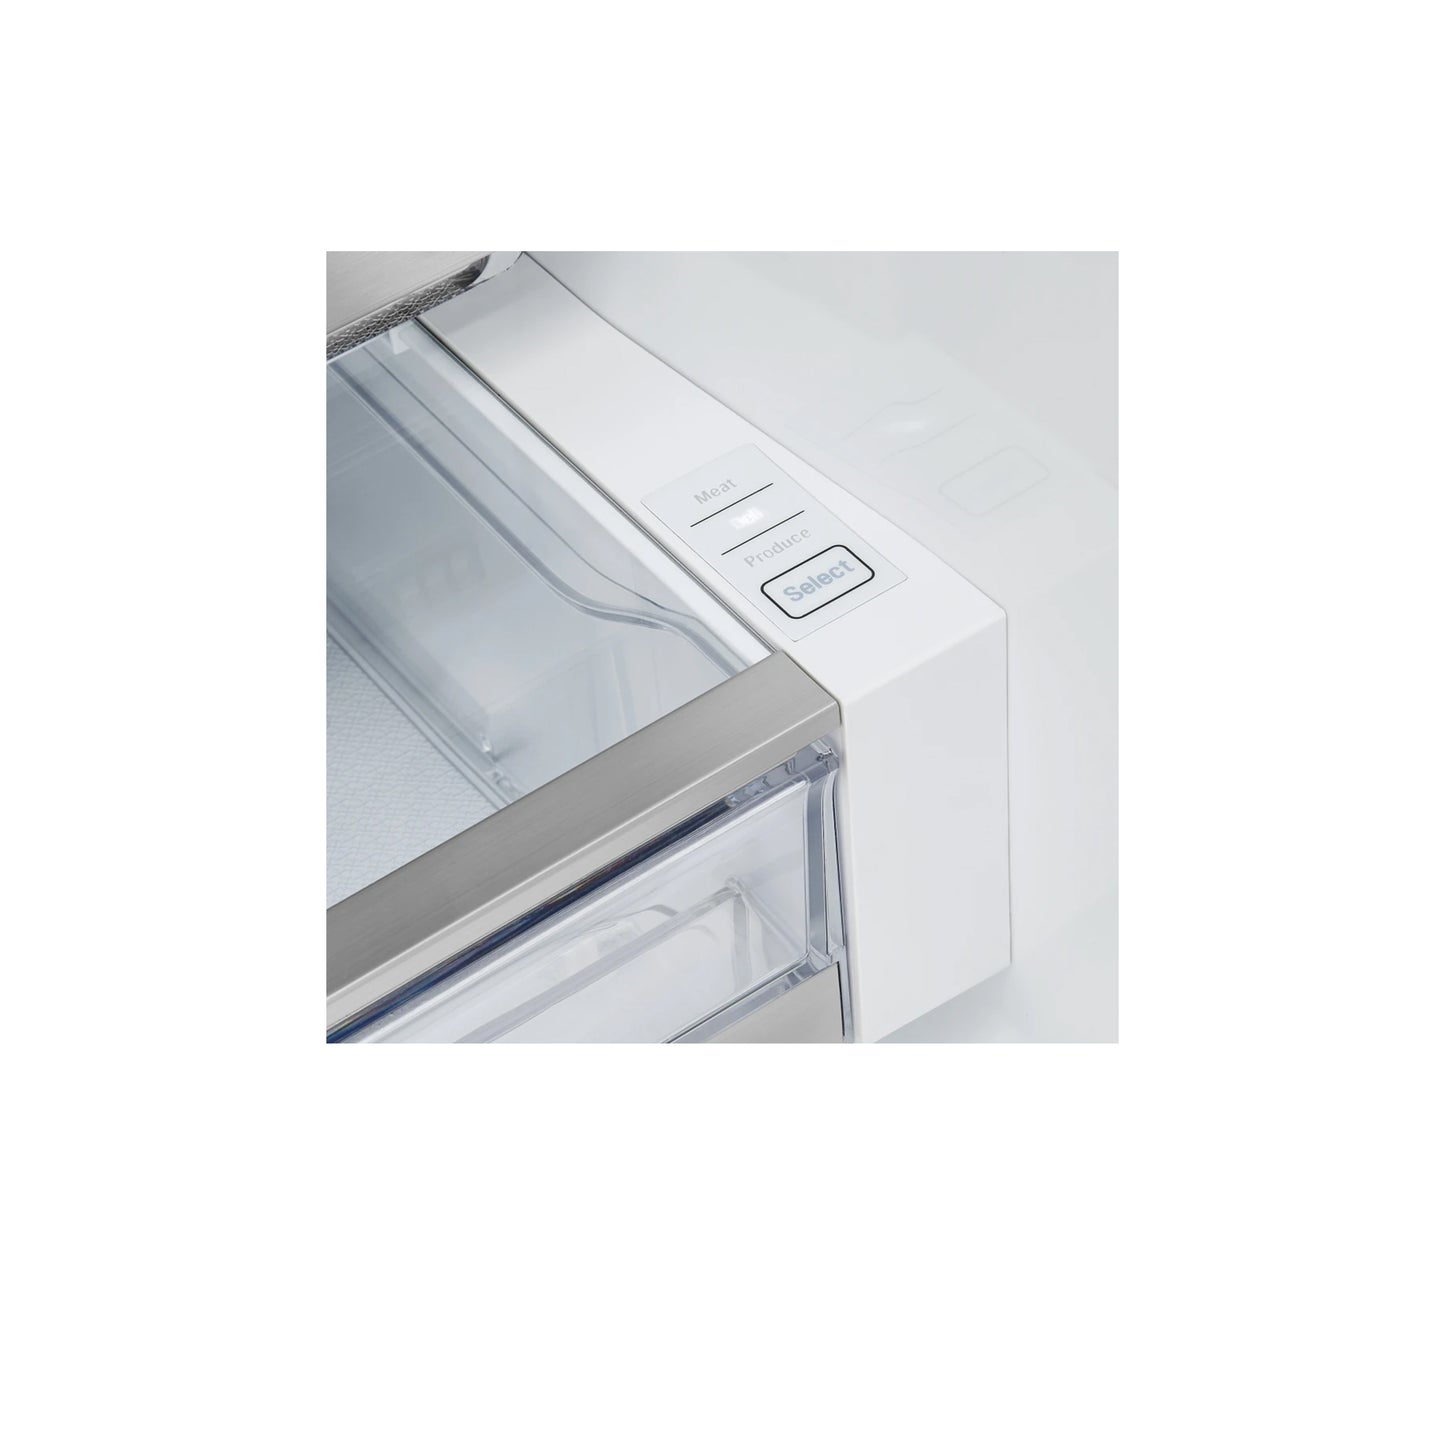 36-inch Wide French Door Refrigerator - 30 cu. ft. - LRFDS3016S